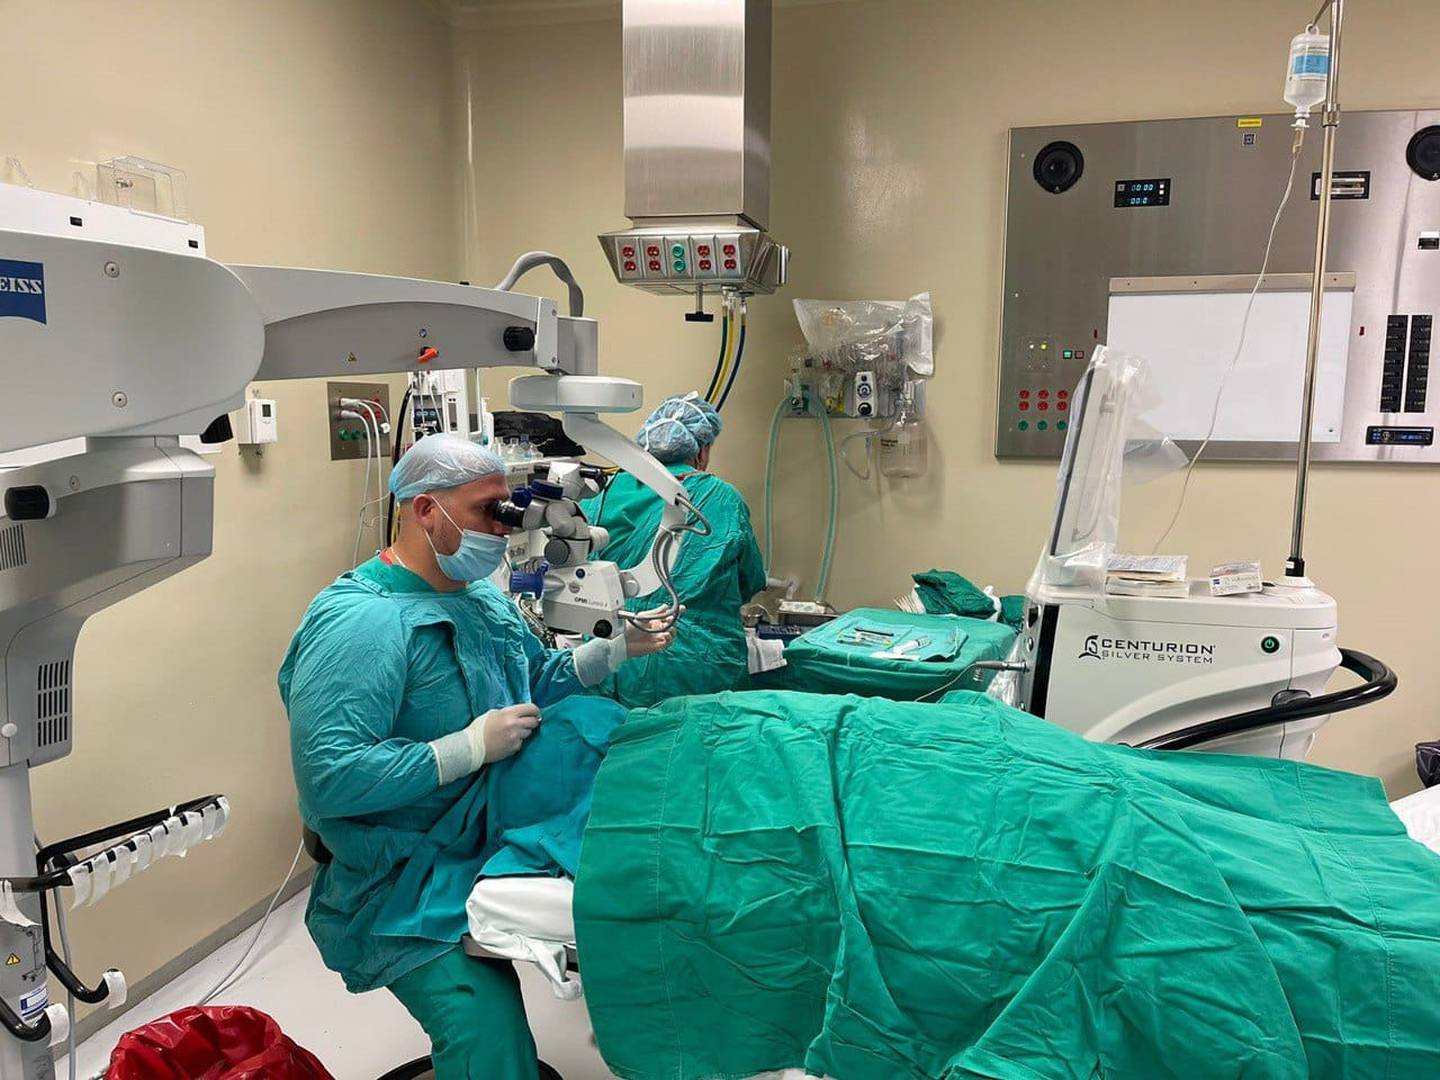 Dos equipos de la Clínica Oftalmológica de la Caja Costarricense de Seguro Social (CCSS) se trasladaron al hospital de Guápiles (Pococí, Limón) con el propósito de realizar durante esta semana 200 cirugías de catarata en ojos